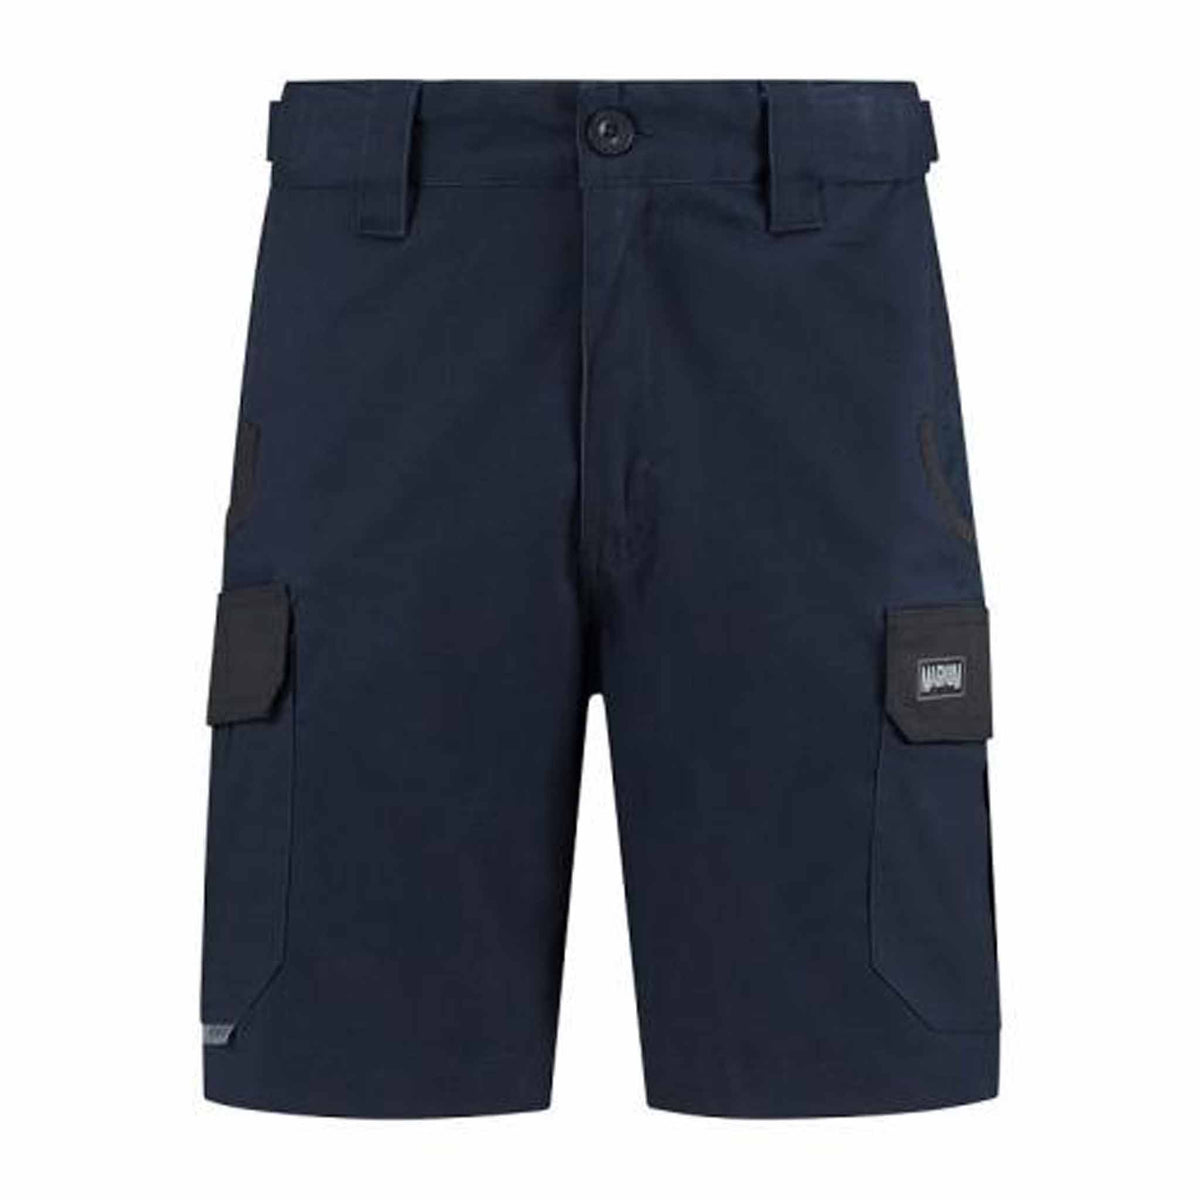 navy shorts 247 series